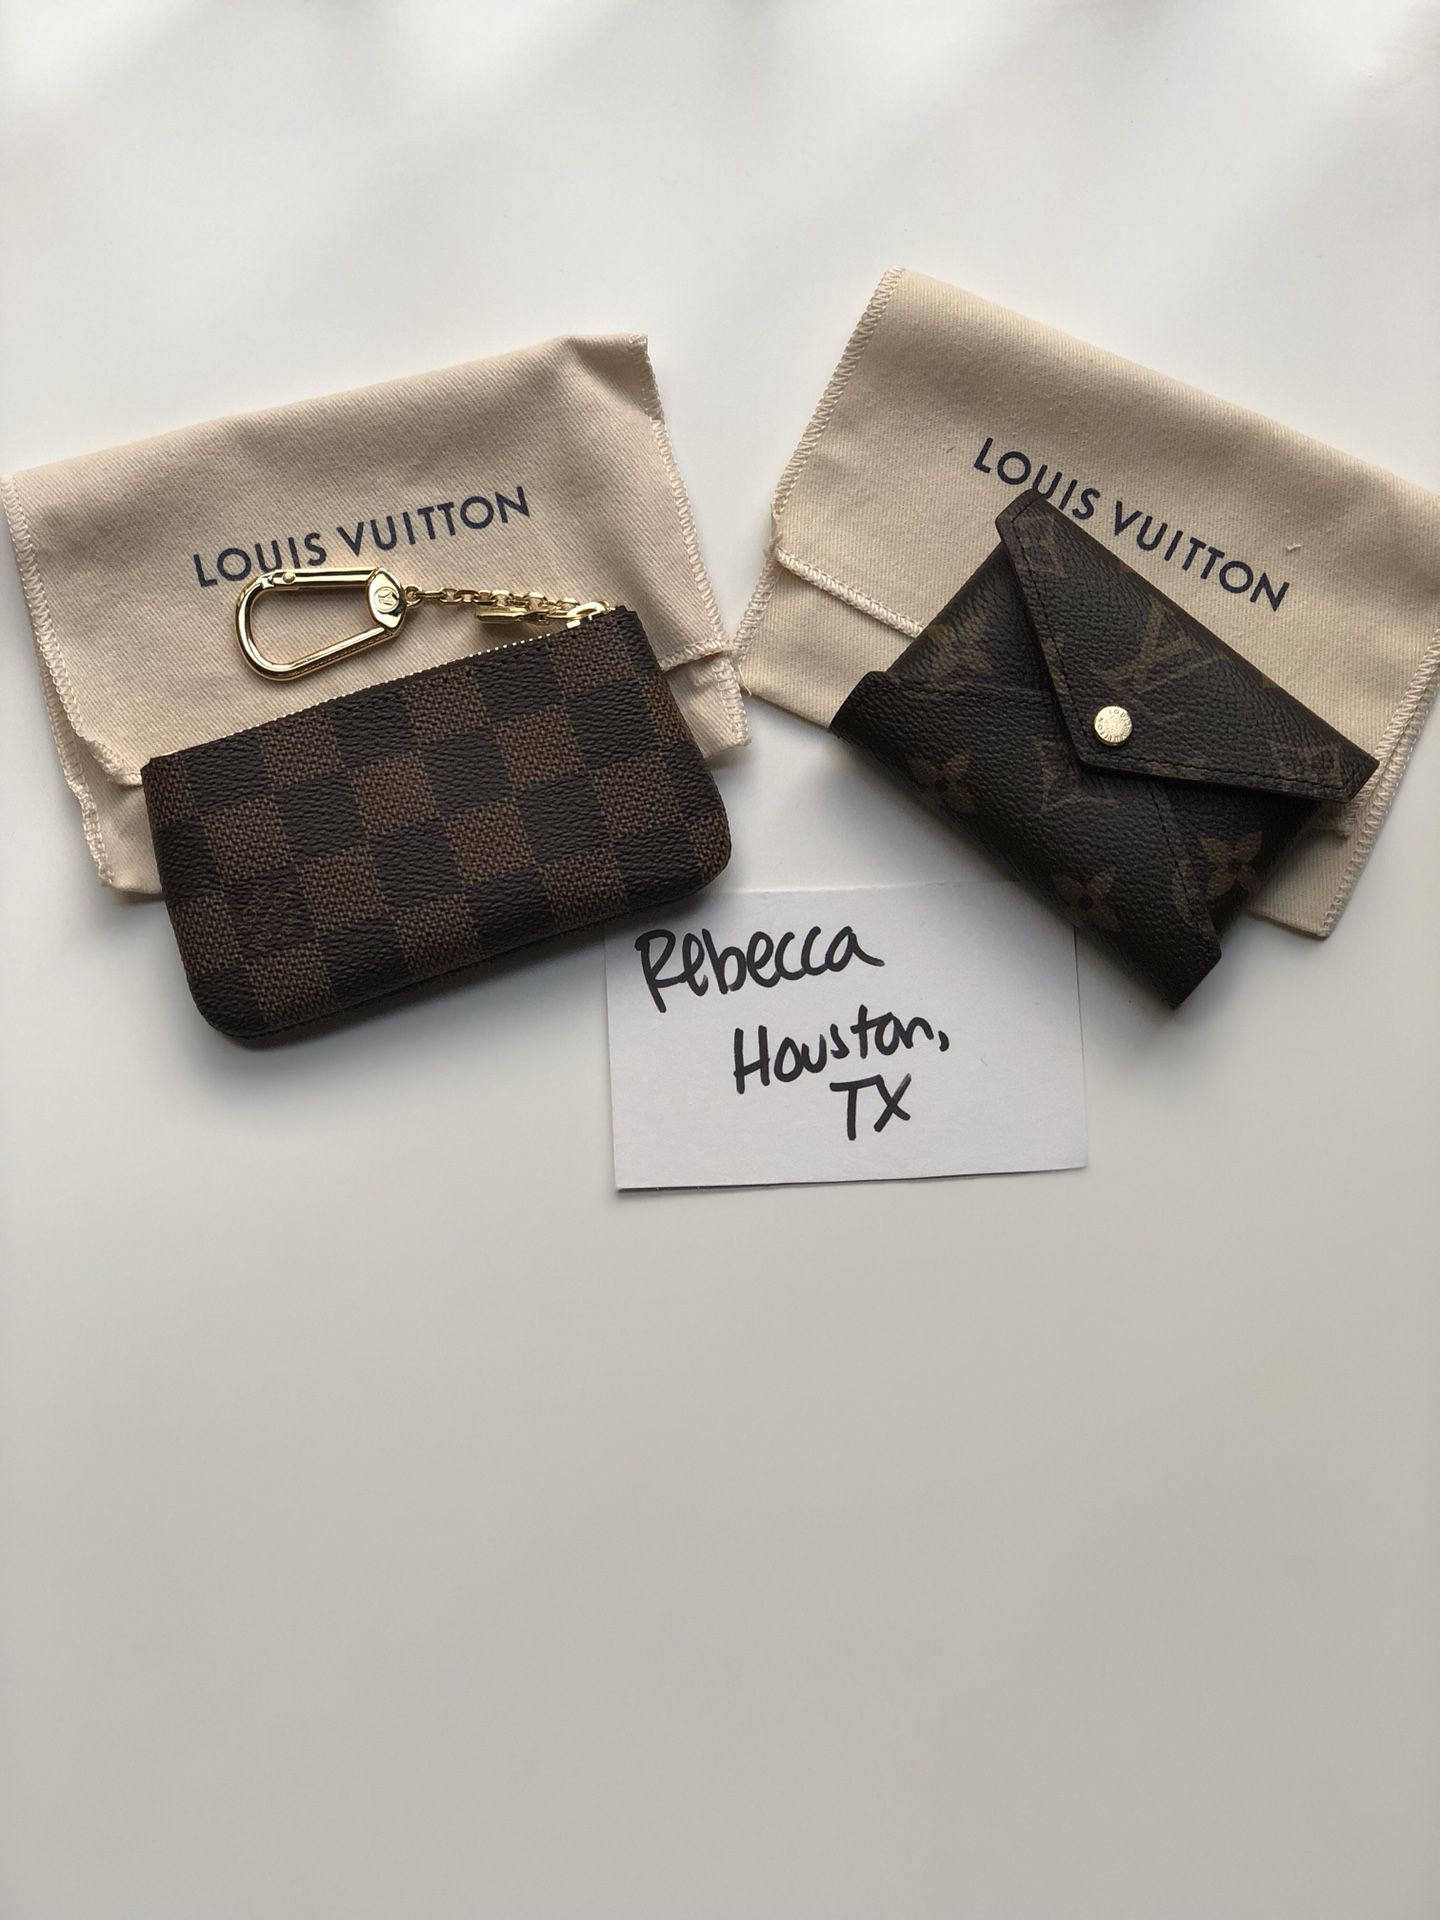 Louis Vuitton SLG Collection 2018